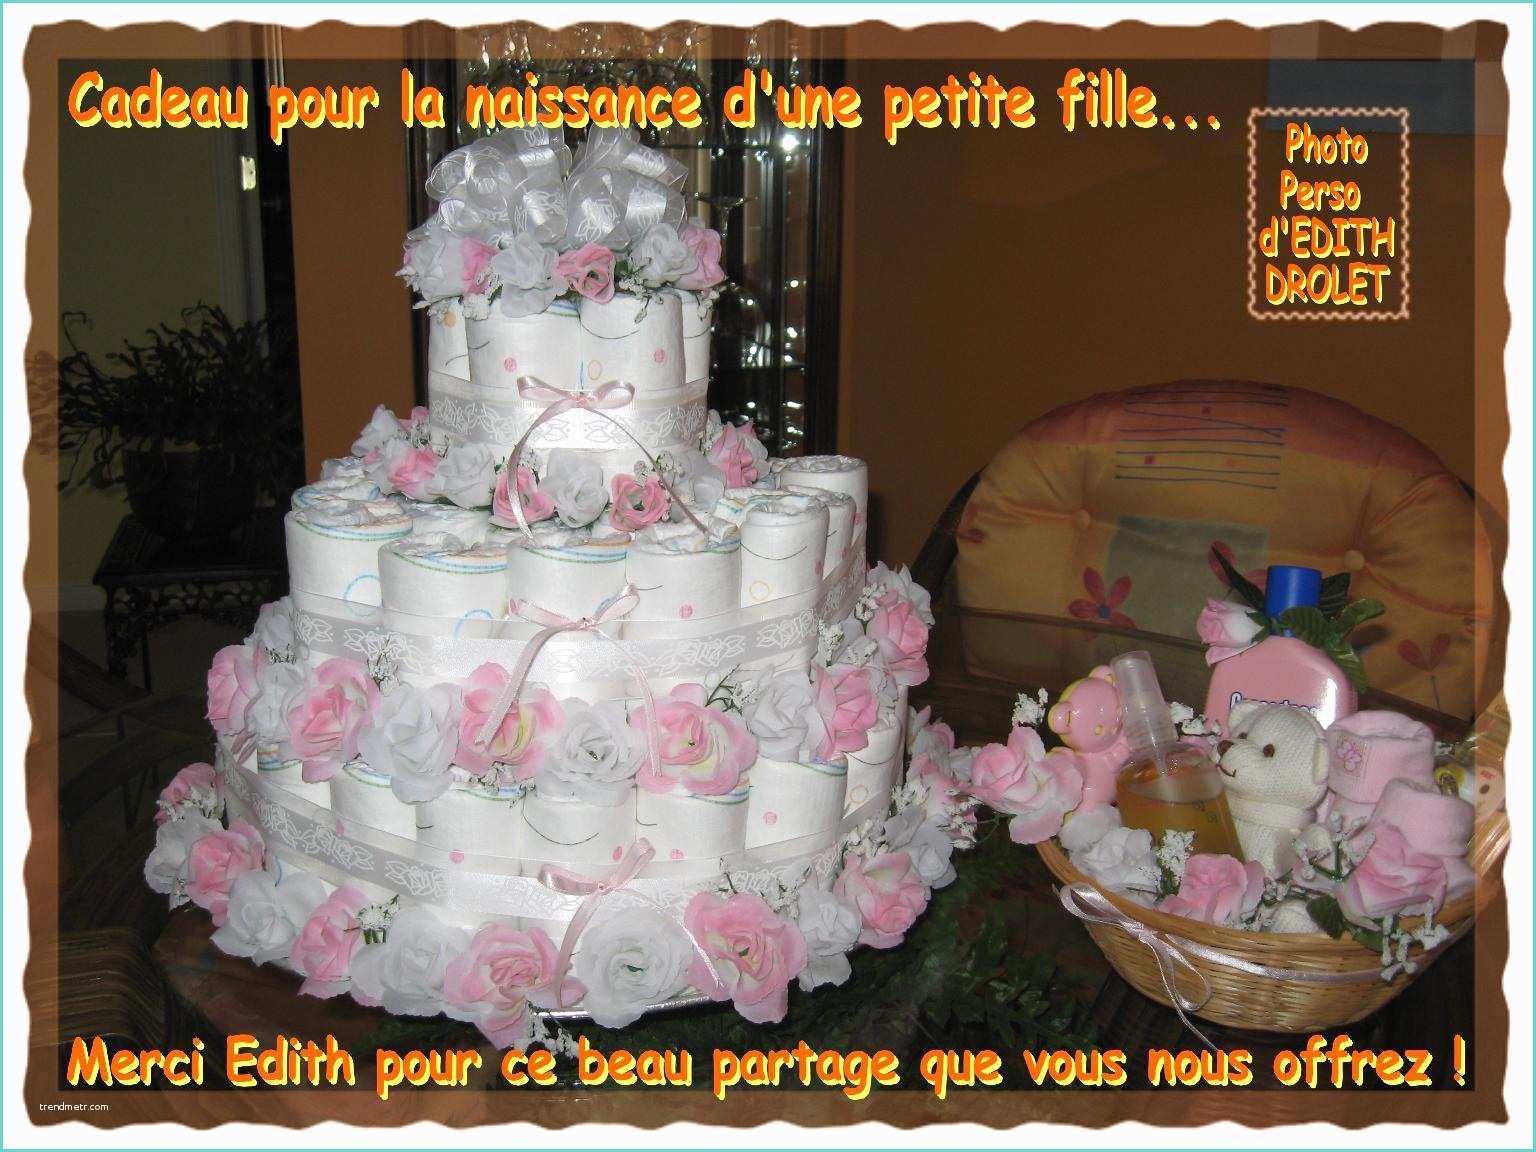 Cadeau Personnalis Petite Fille Gâteau Cadeau Pour La Naissance D Une Petite Fille 5e